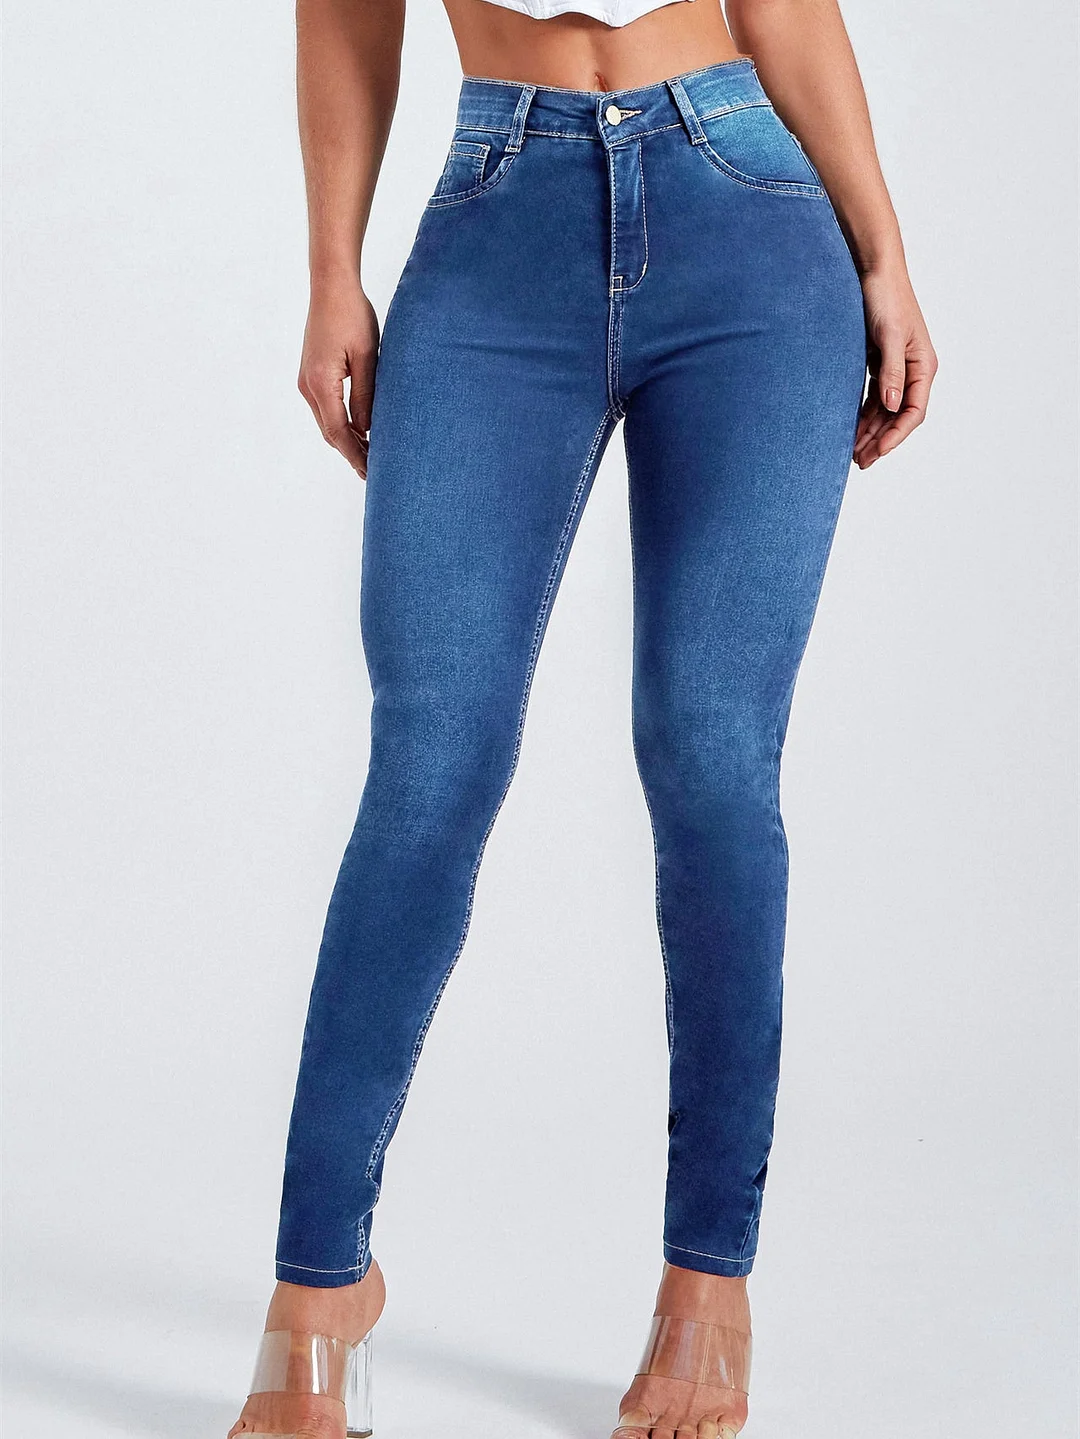 Women's Stretch Skinny Zipper Fly Jeans Pants